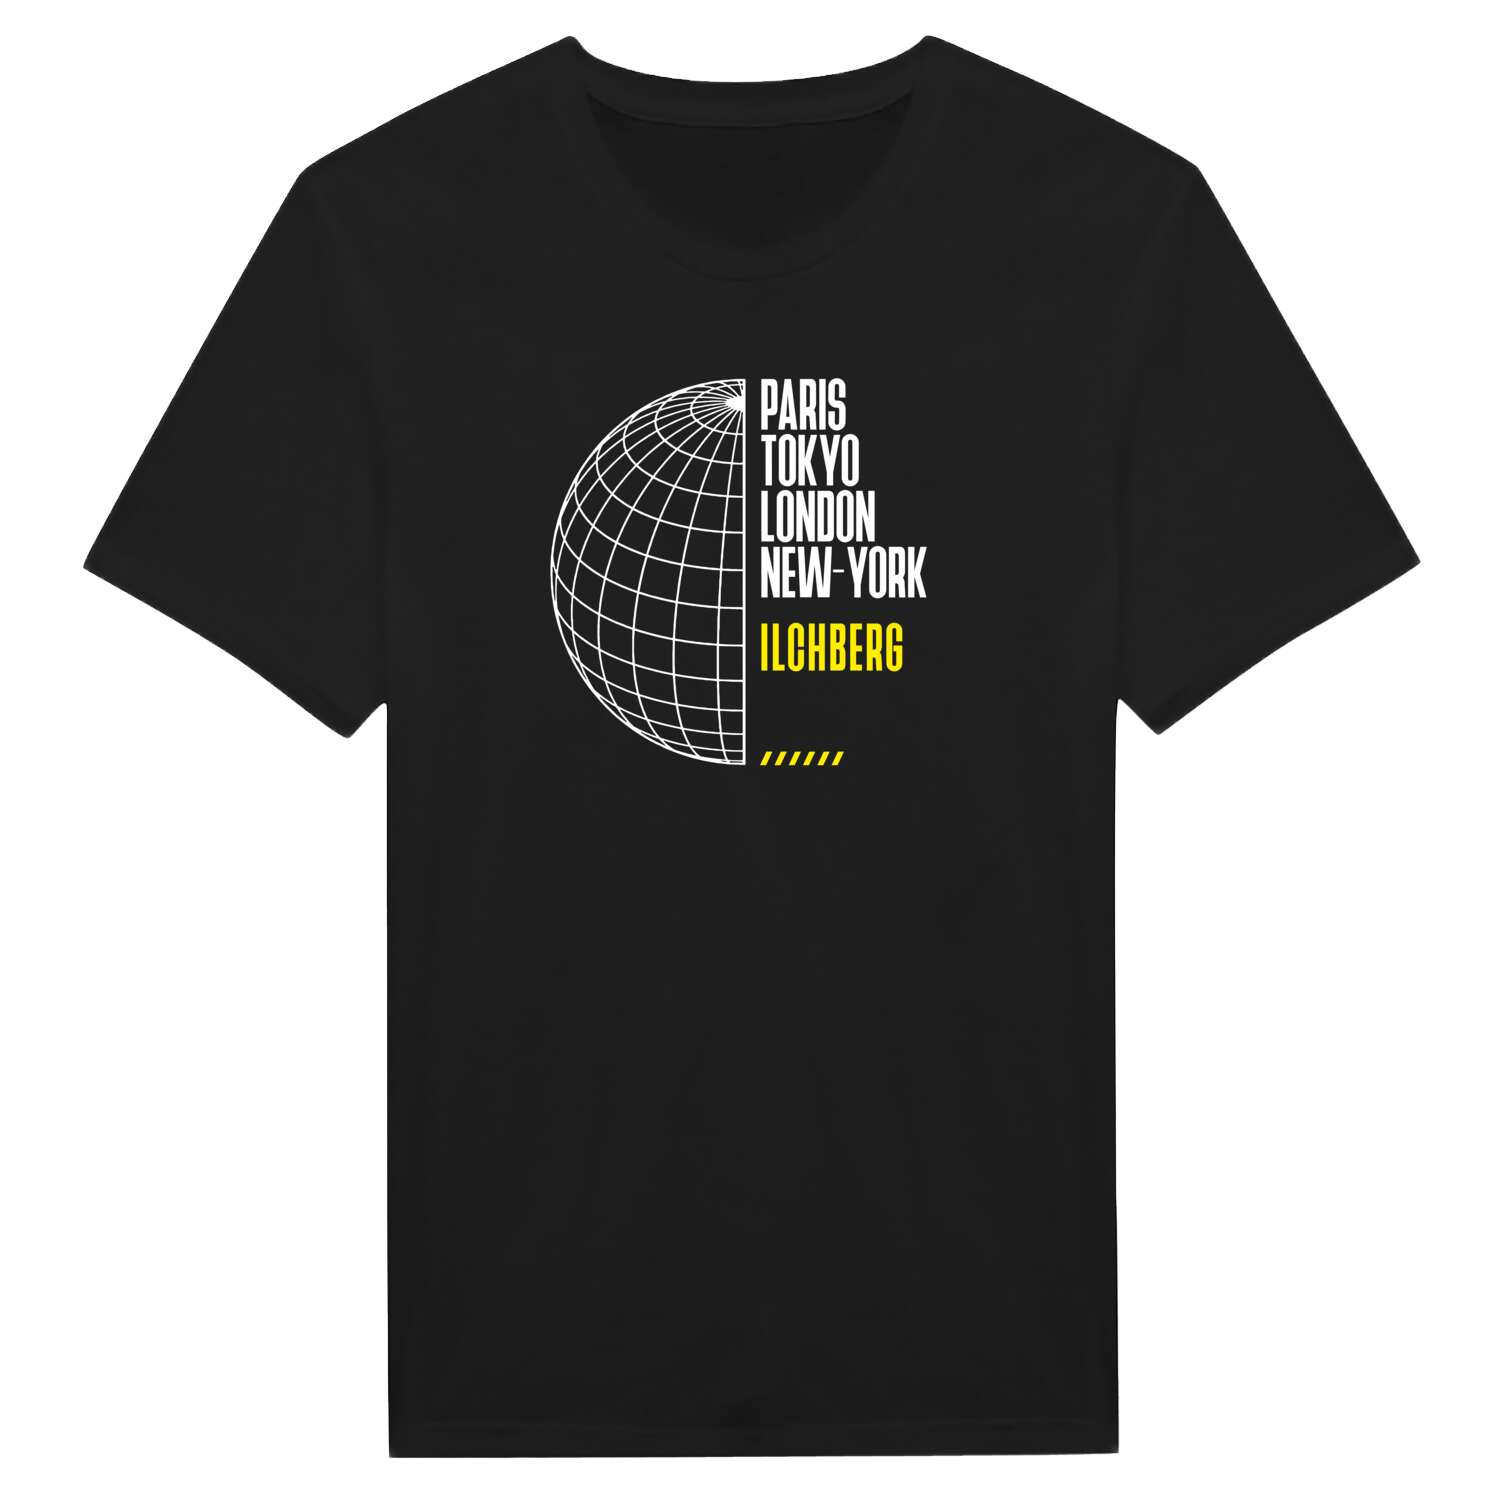 Ilchberg T-Shirt »Paris Tokyo London«